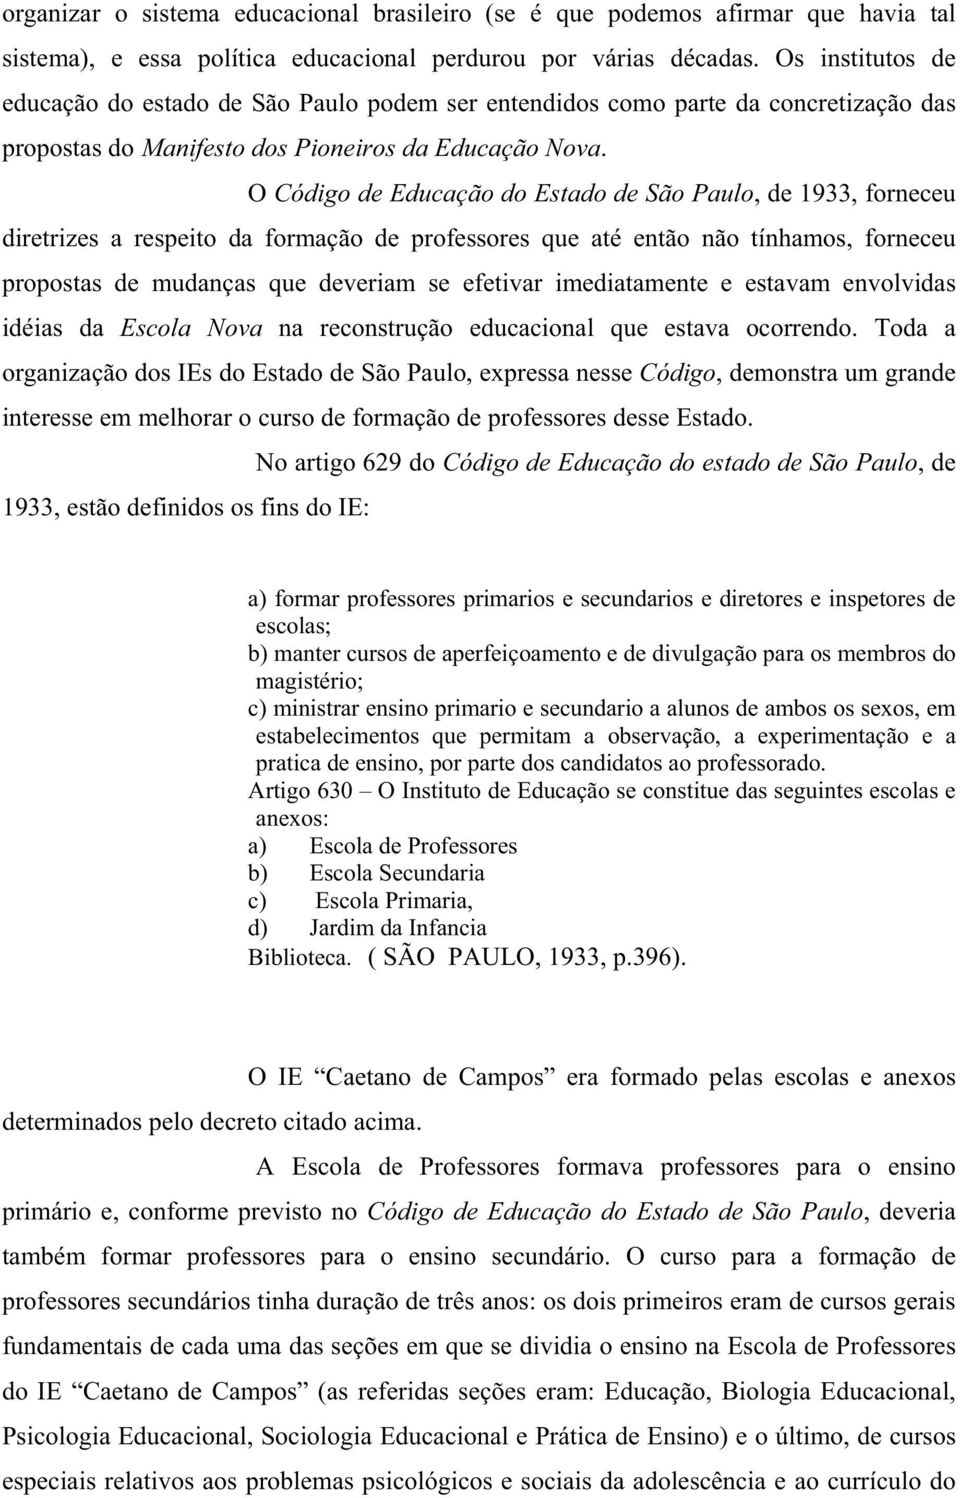 O Código de Educação do Estado de São Paulo, de 1933, forneceu diretrizes a respeito da formação de professores que até então não tínhamos, forneceu propostas de mudanças que deveriam se efetivar